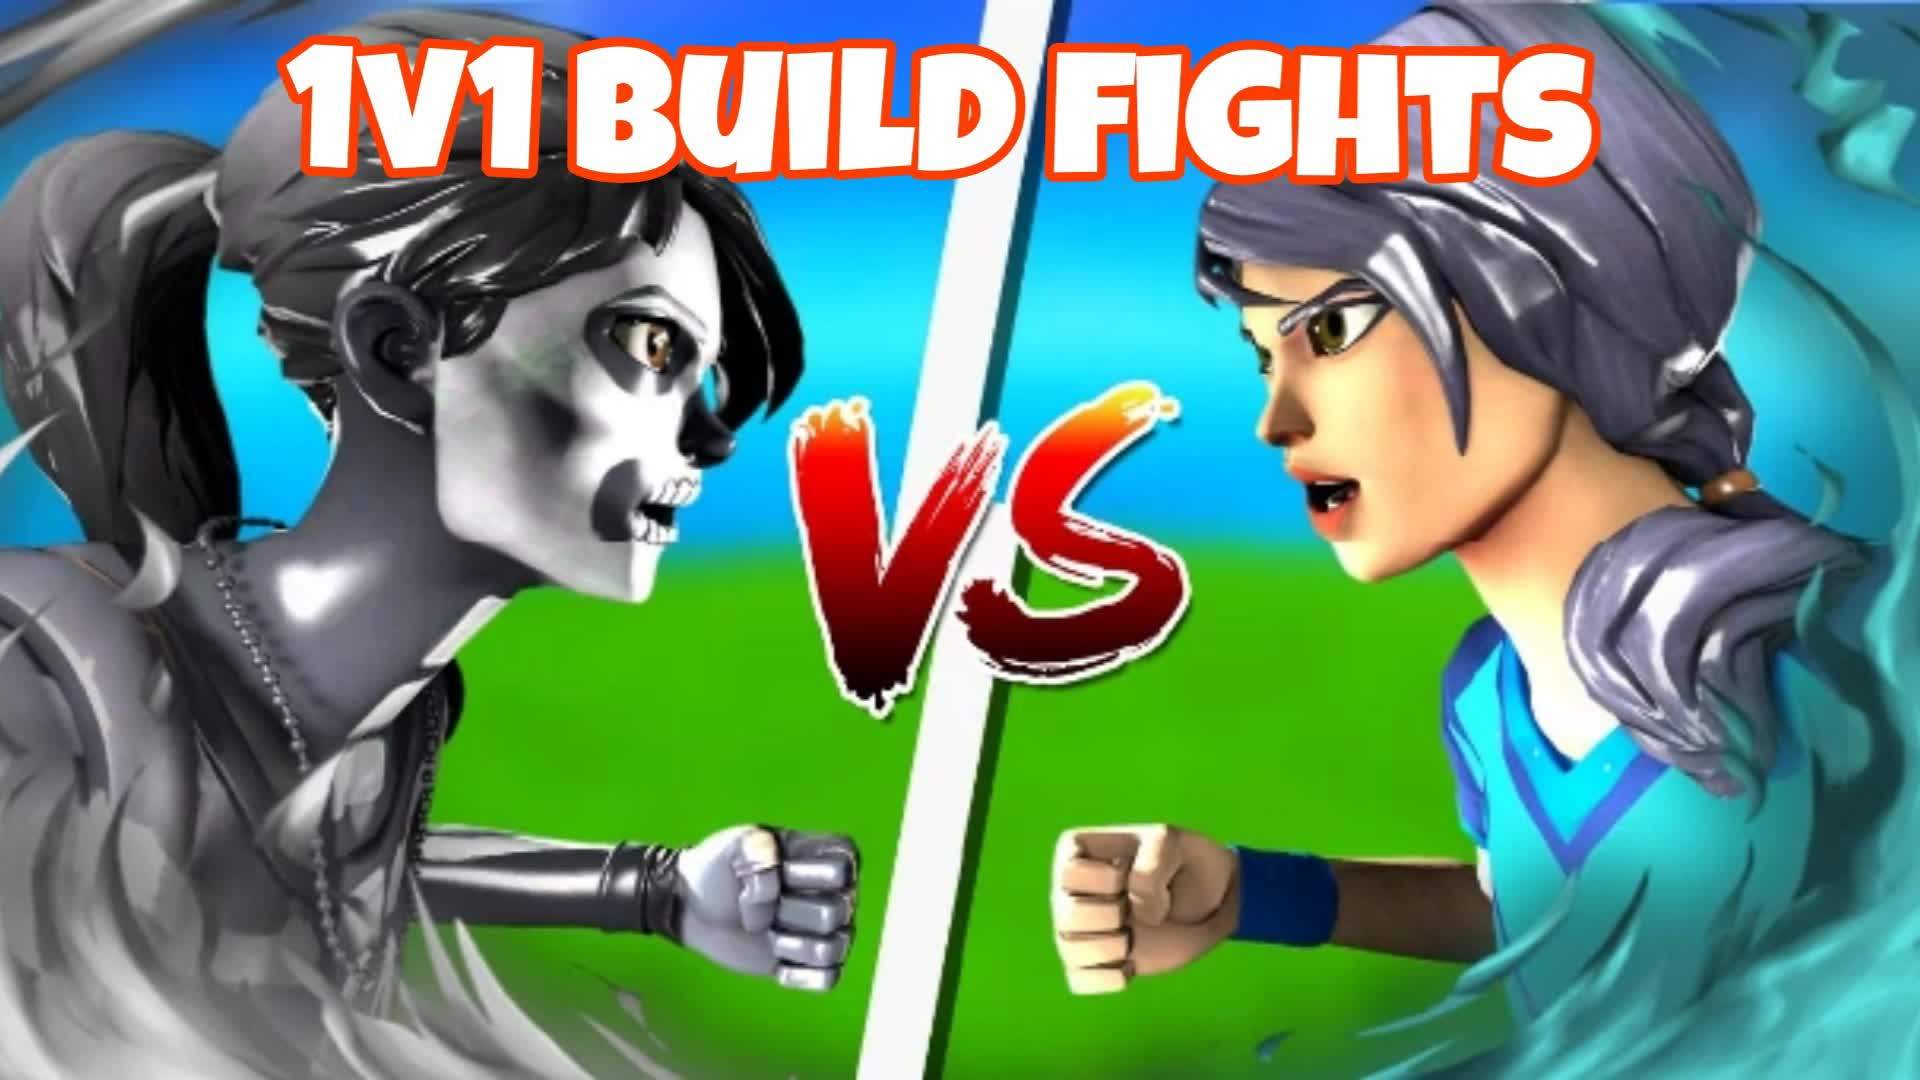 1v1 build fights